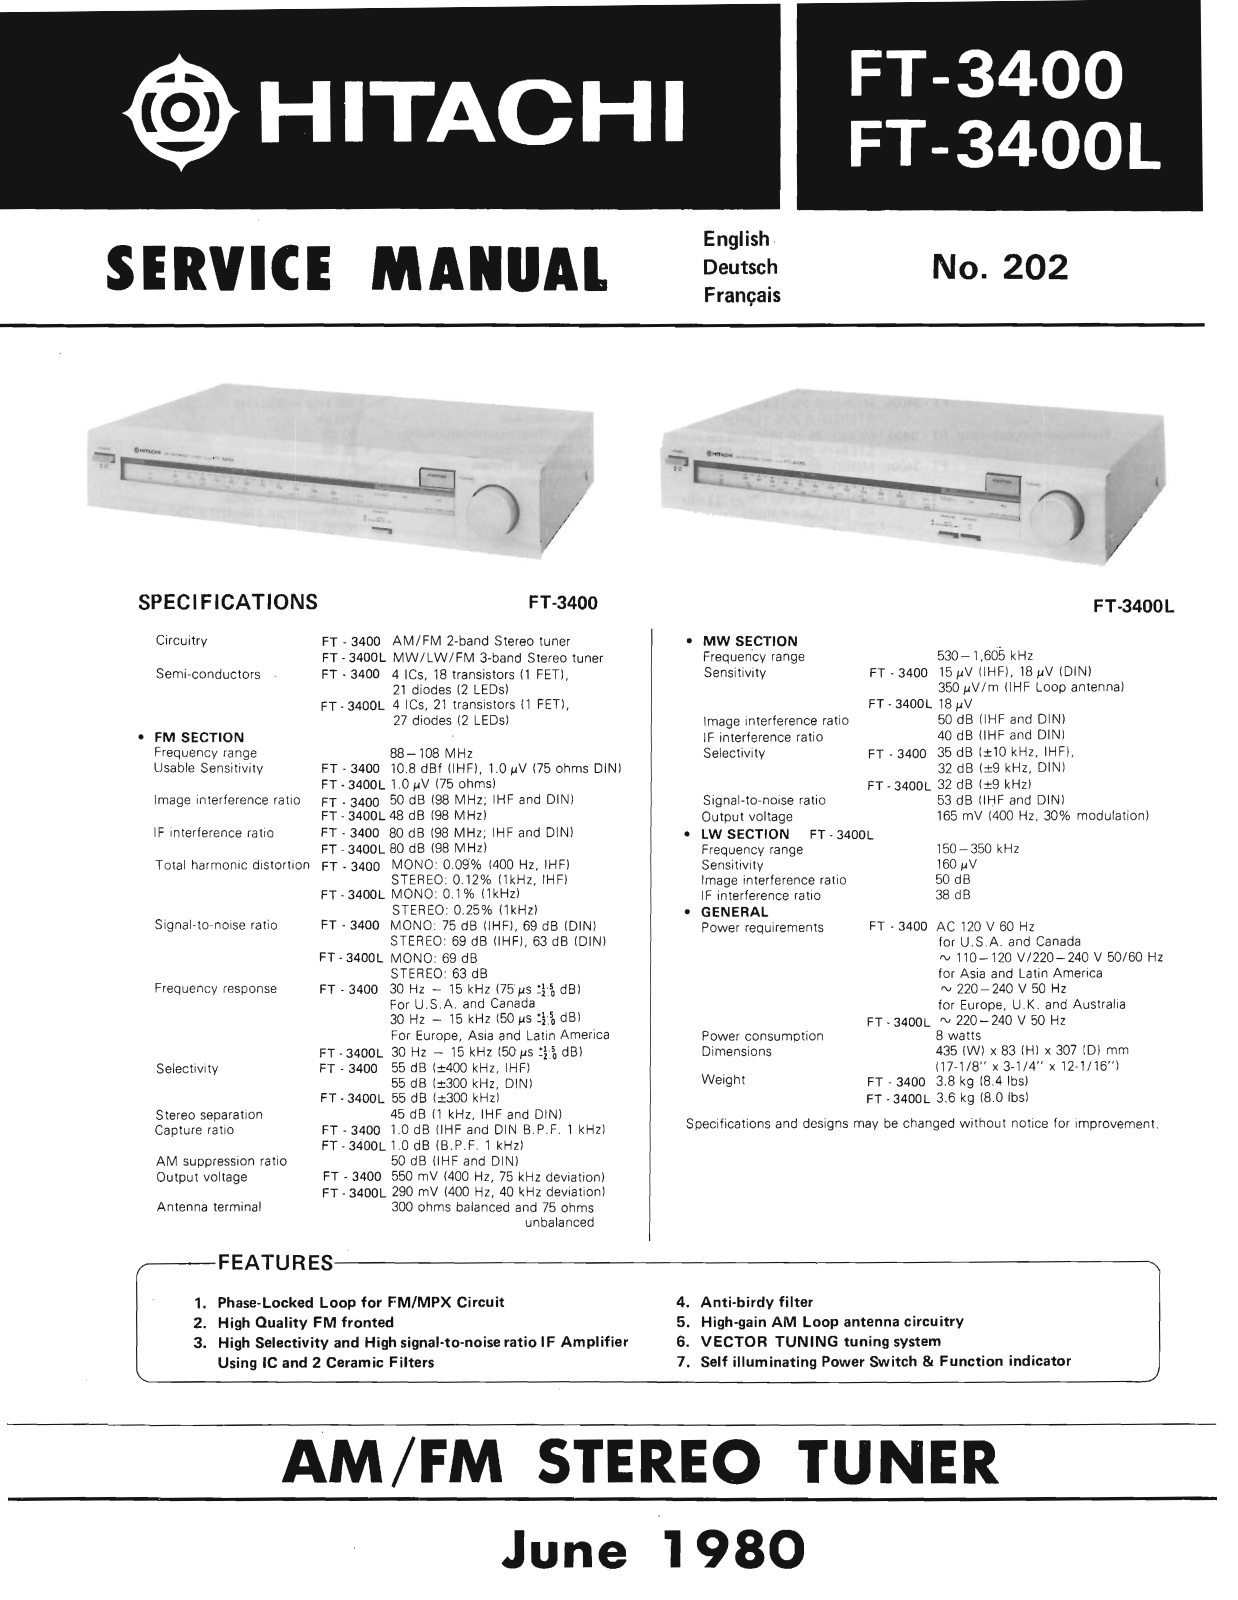 Hitachi FT-3400, FT-3400-L Service Manual